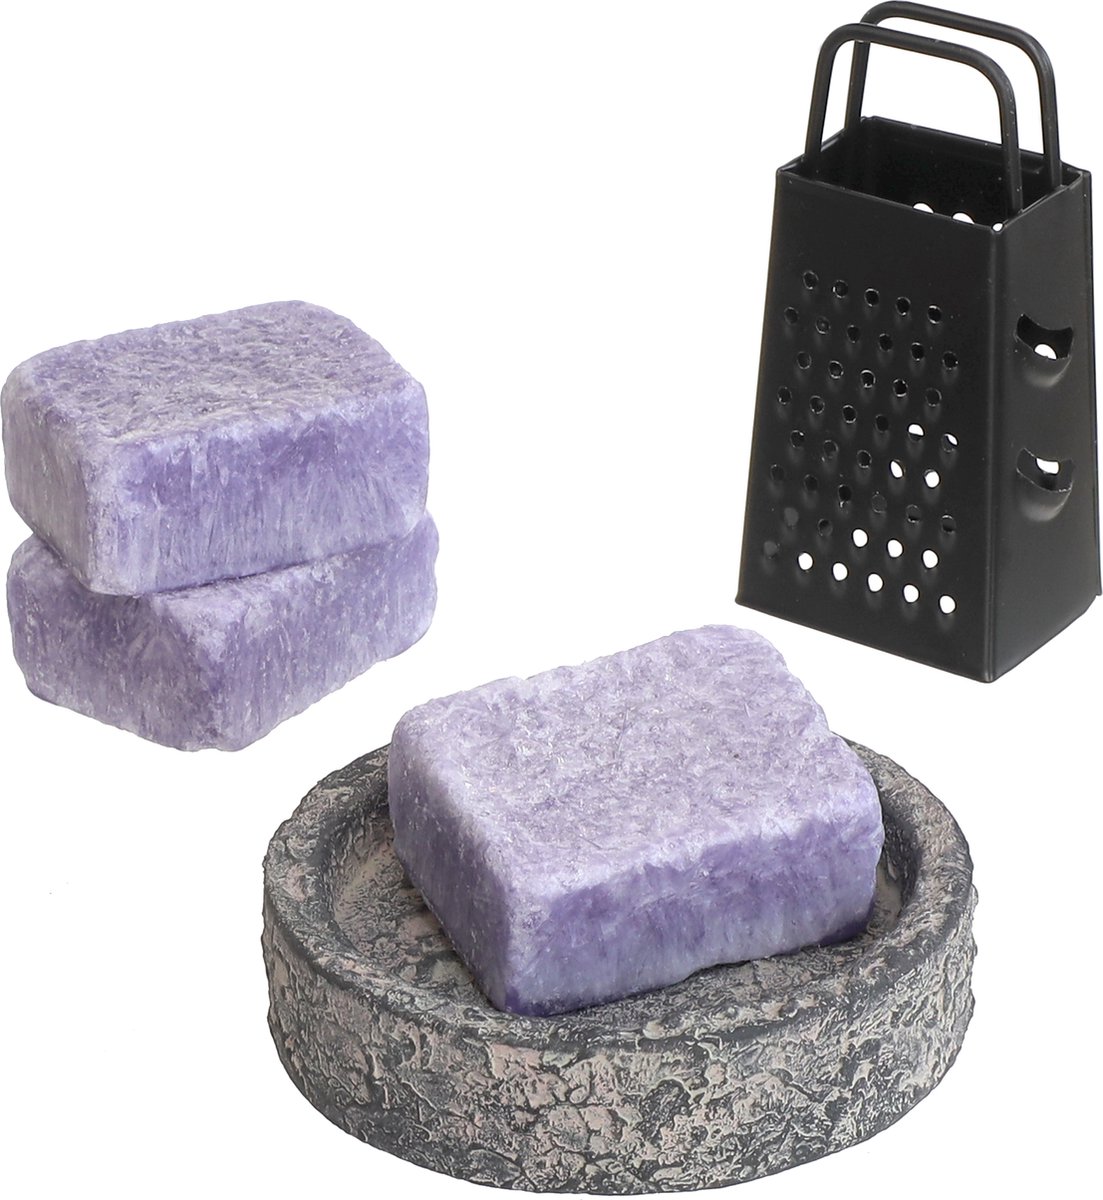 Comforder 3 Amberblokjes Lavendel - Geurblokjes Set met Schaaltje, Rasp en Geurzakje - Giftset